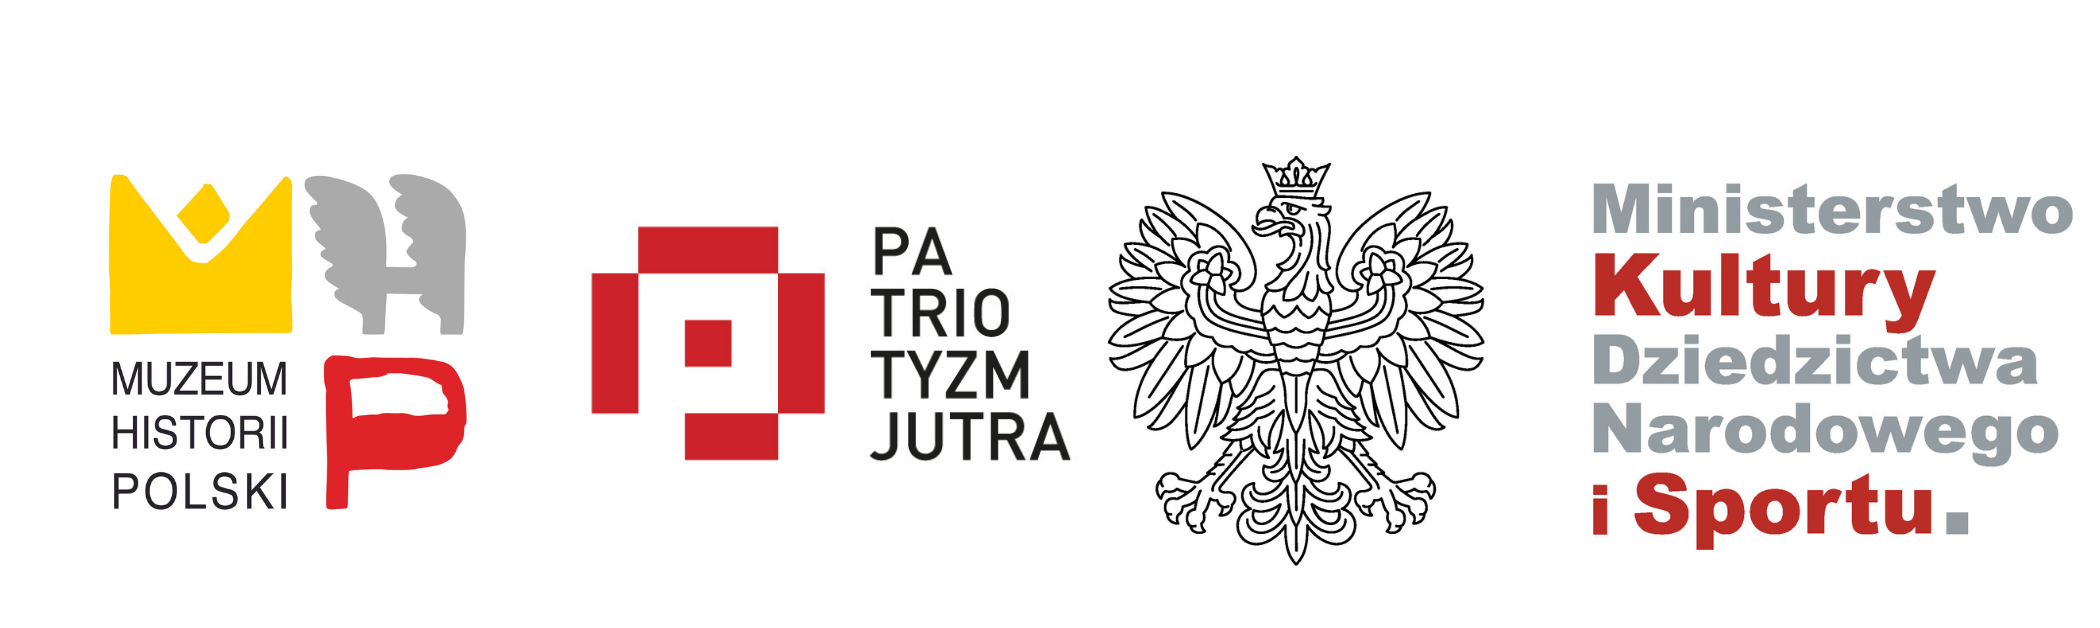 logo muzeum historii polski, programu patriotyzm jutra, ministerstwo kultury, dziedzictwa narodowego i sportu